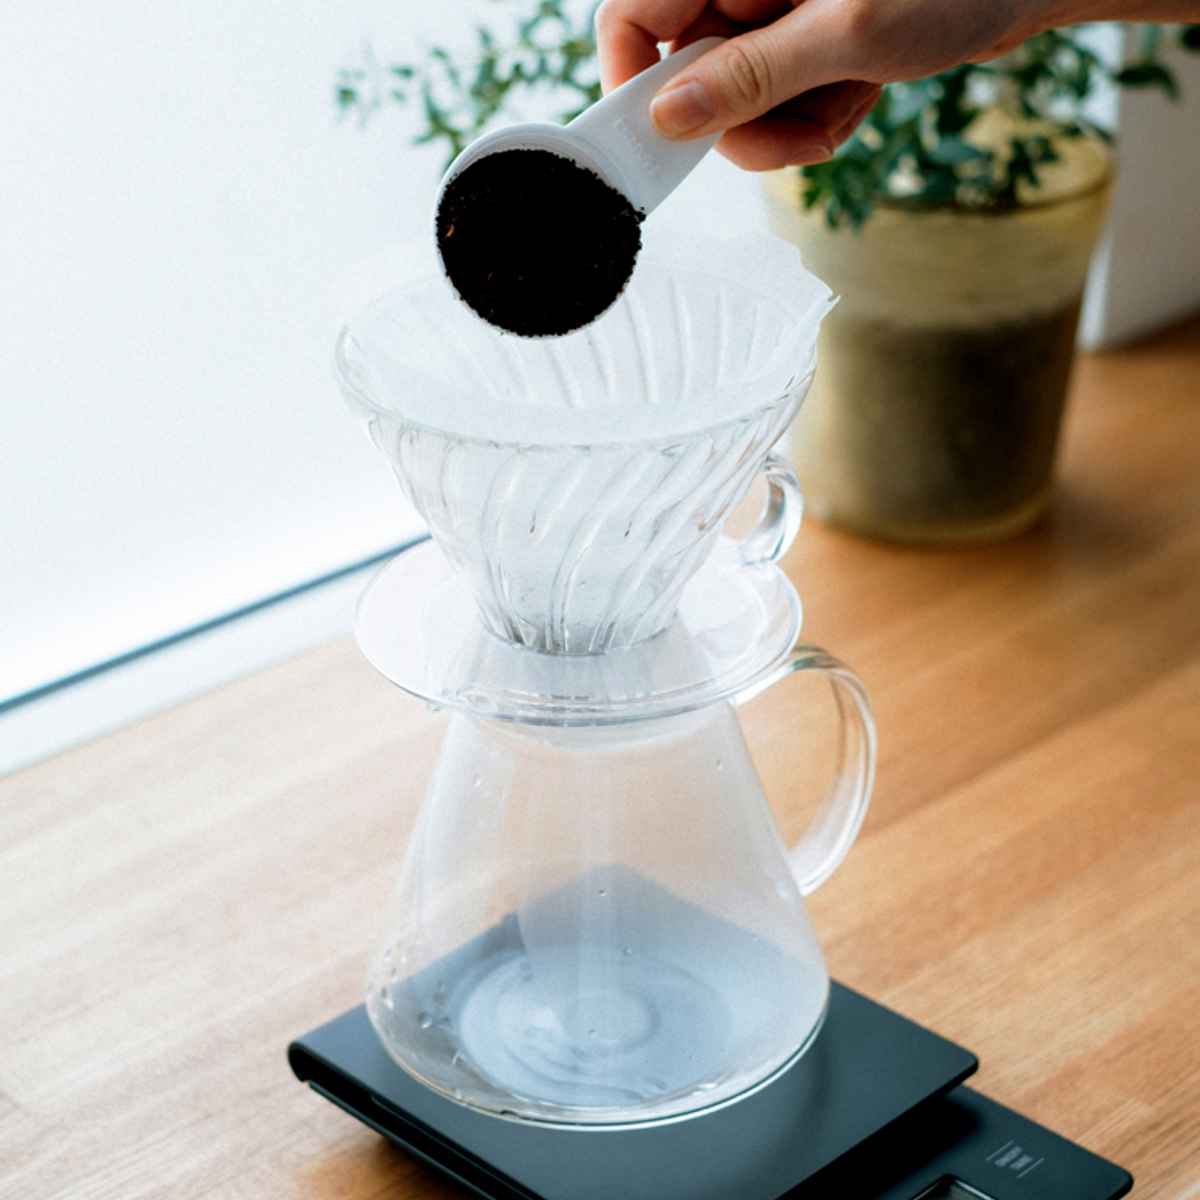 ハリオ ドリッパー コーヒーサーバー セット V60 1〜4杯用 Glass Brewing Kit 耐熱ガラス （ HARIO 食洗機対応 電子レンジ対応 ガラスド